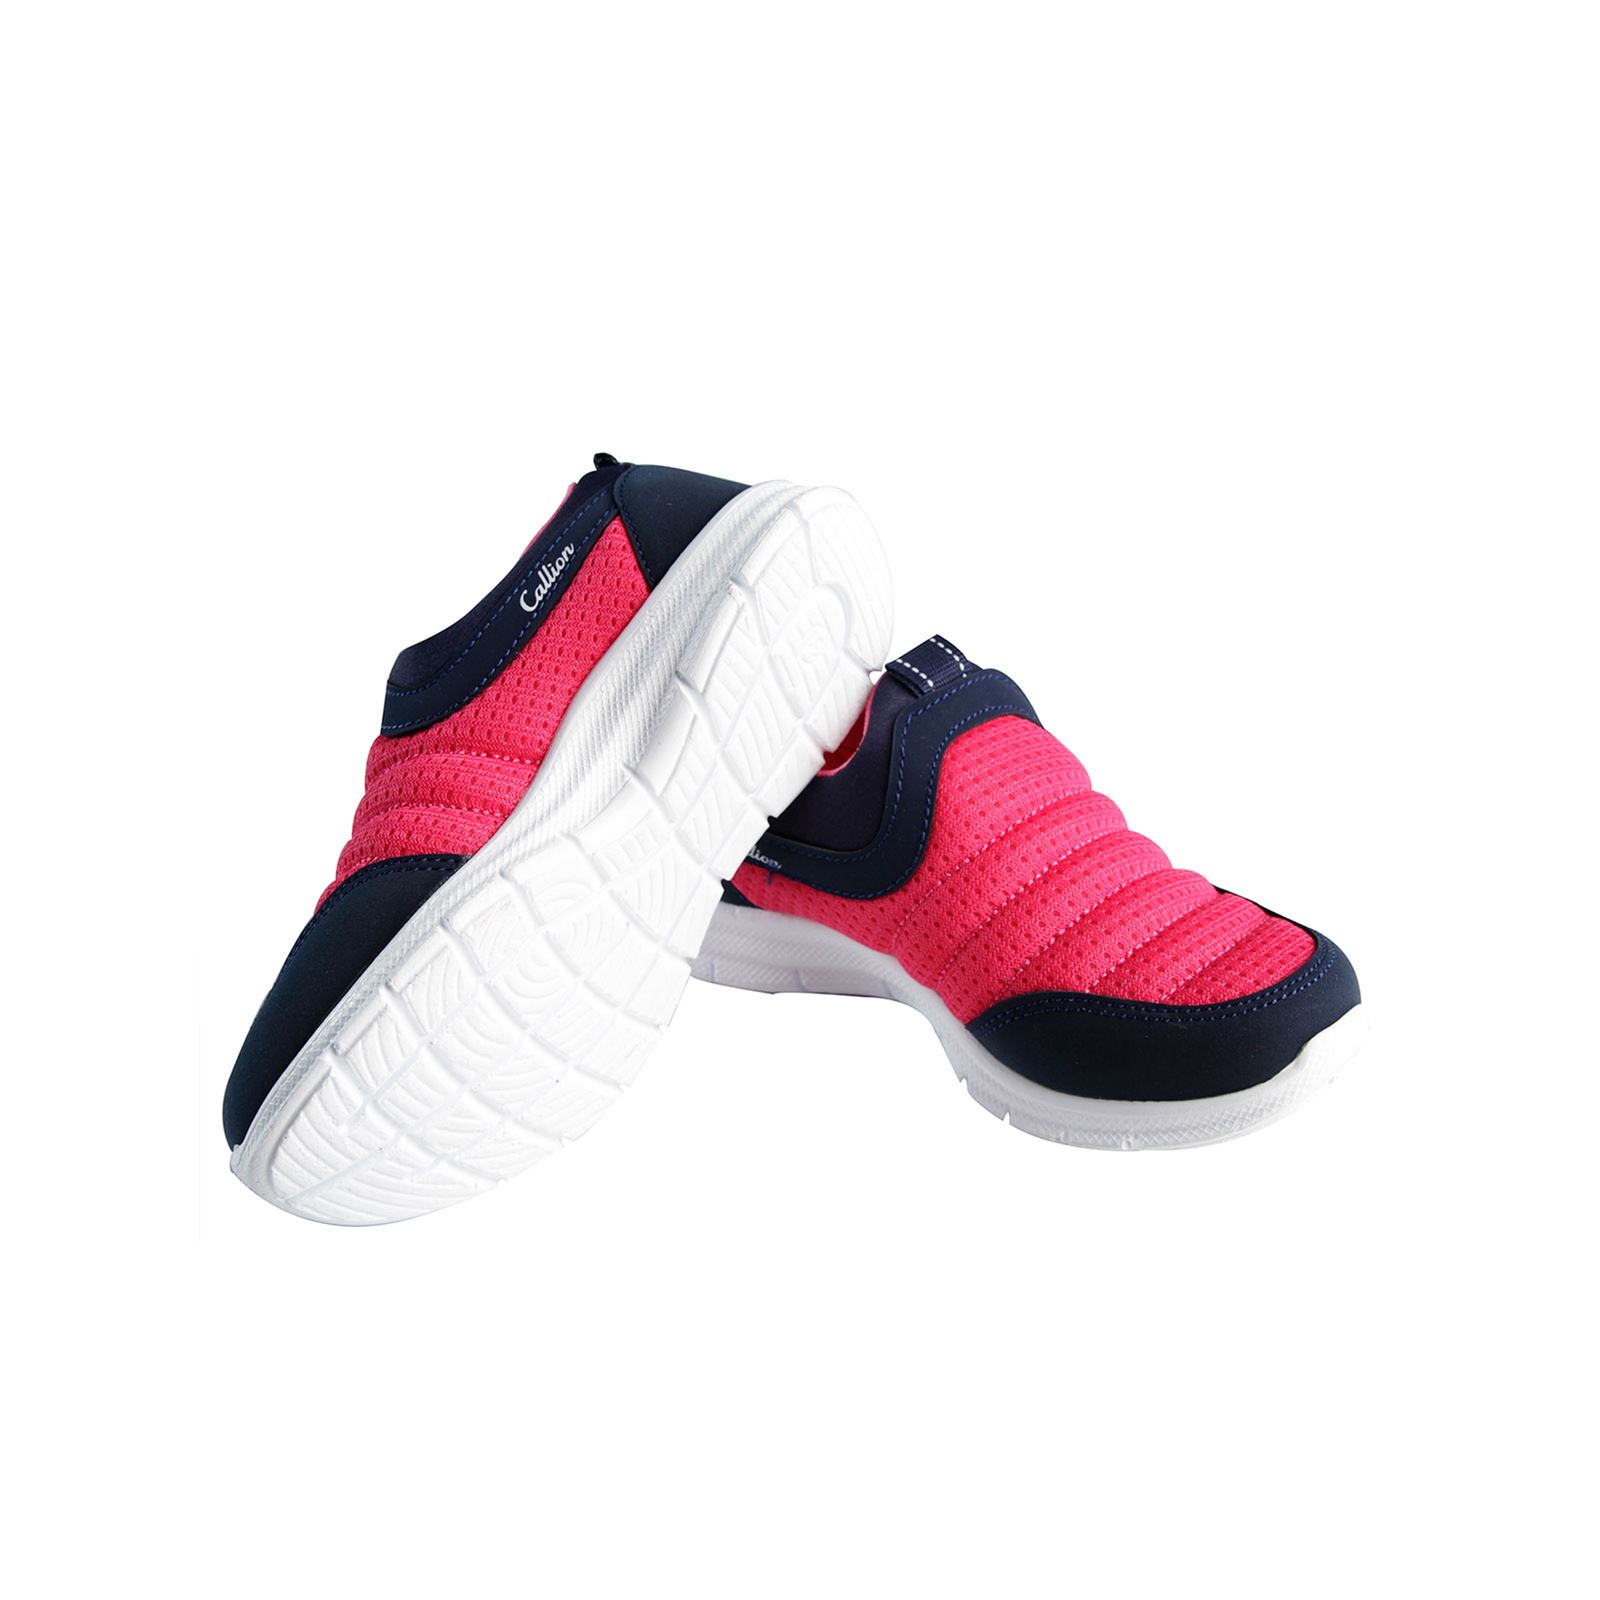 Callion Kız Çocuk Spor Ayakkabı 31-35 Numara Fuşya